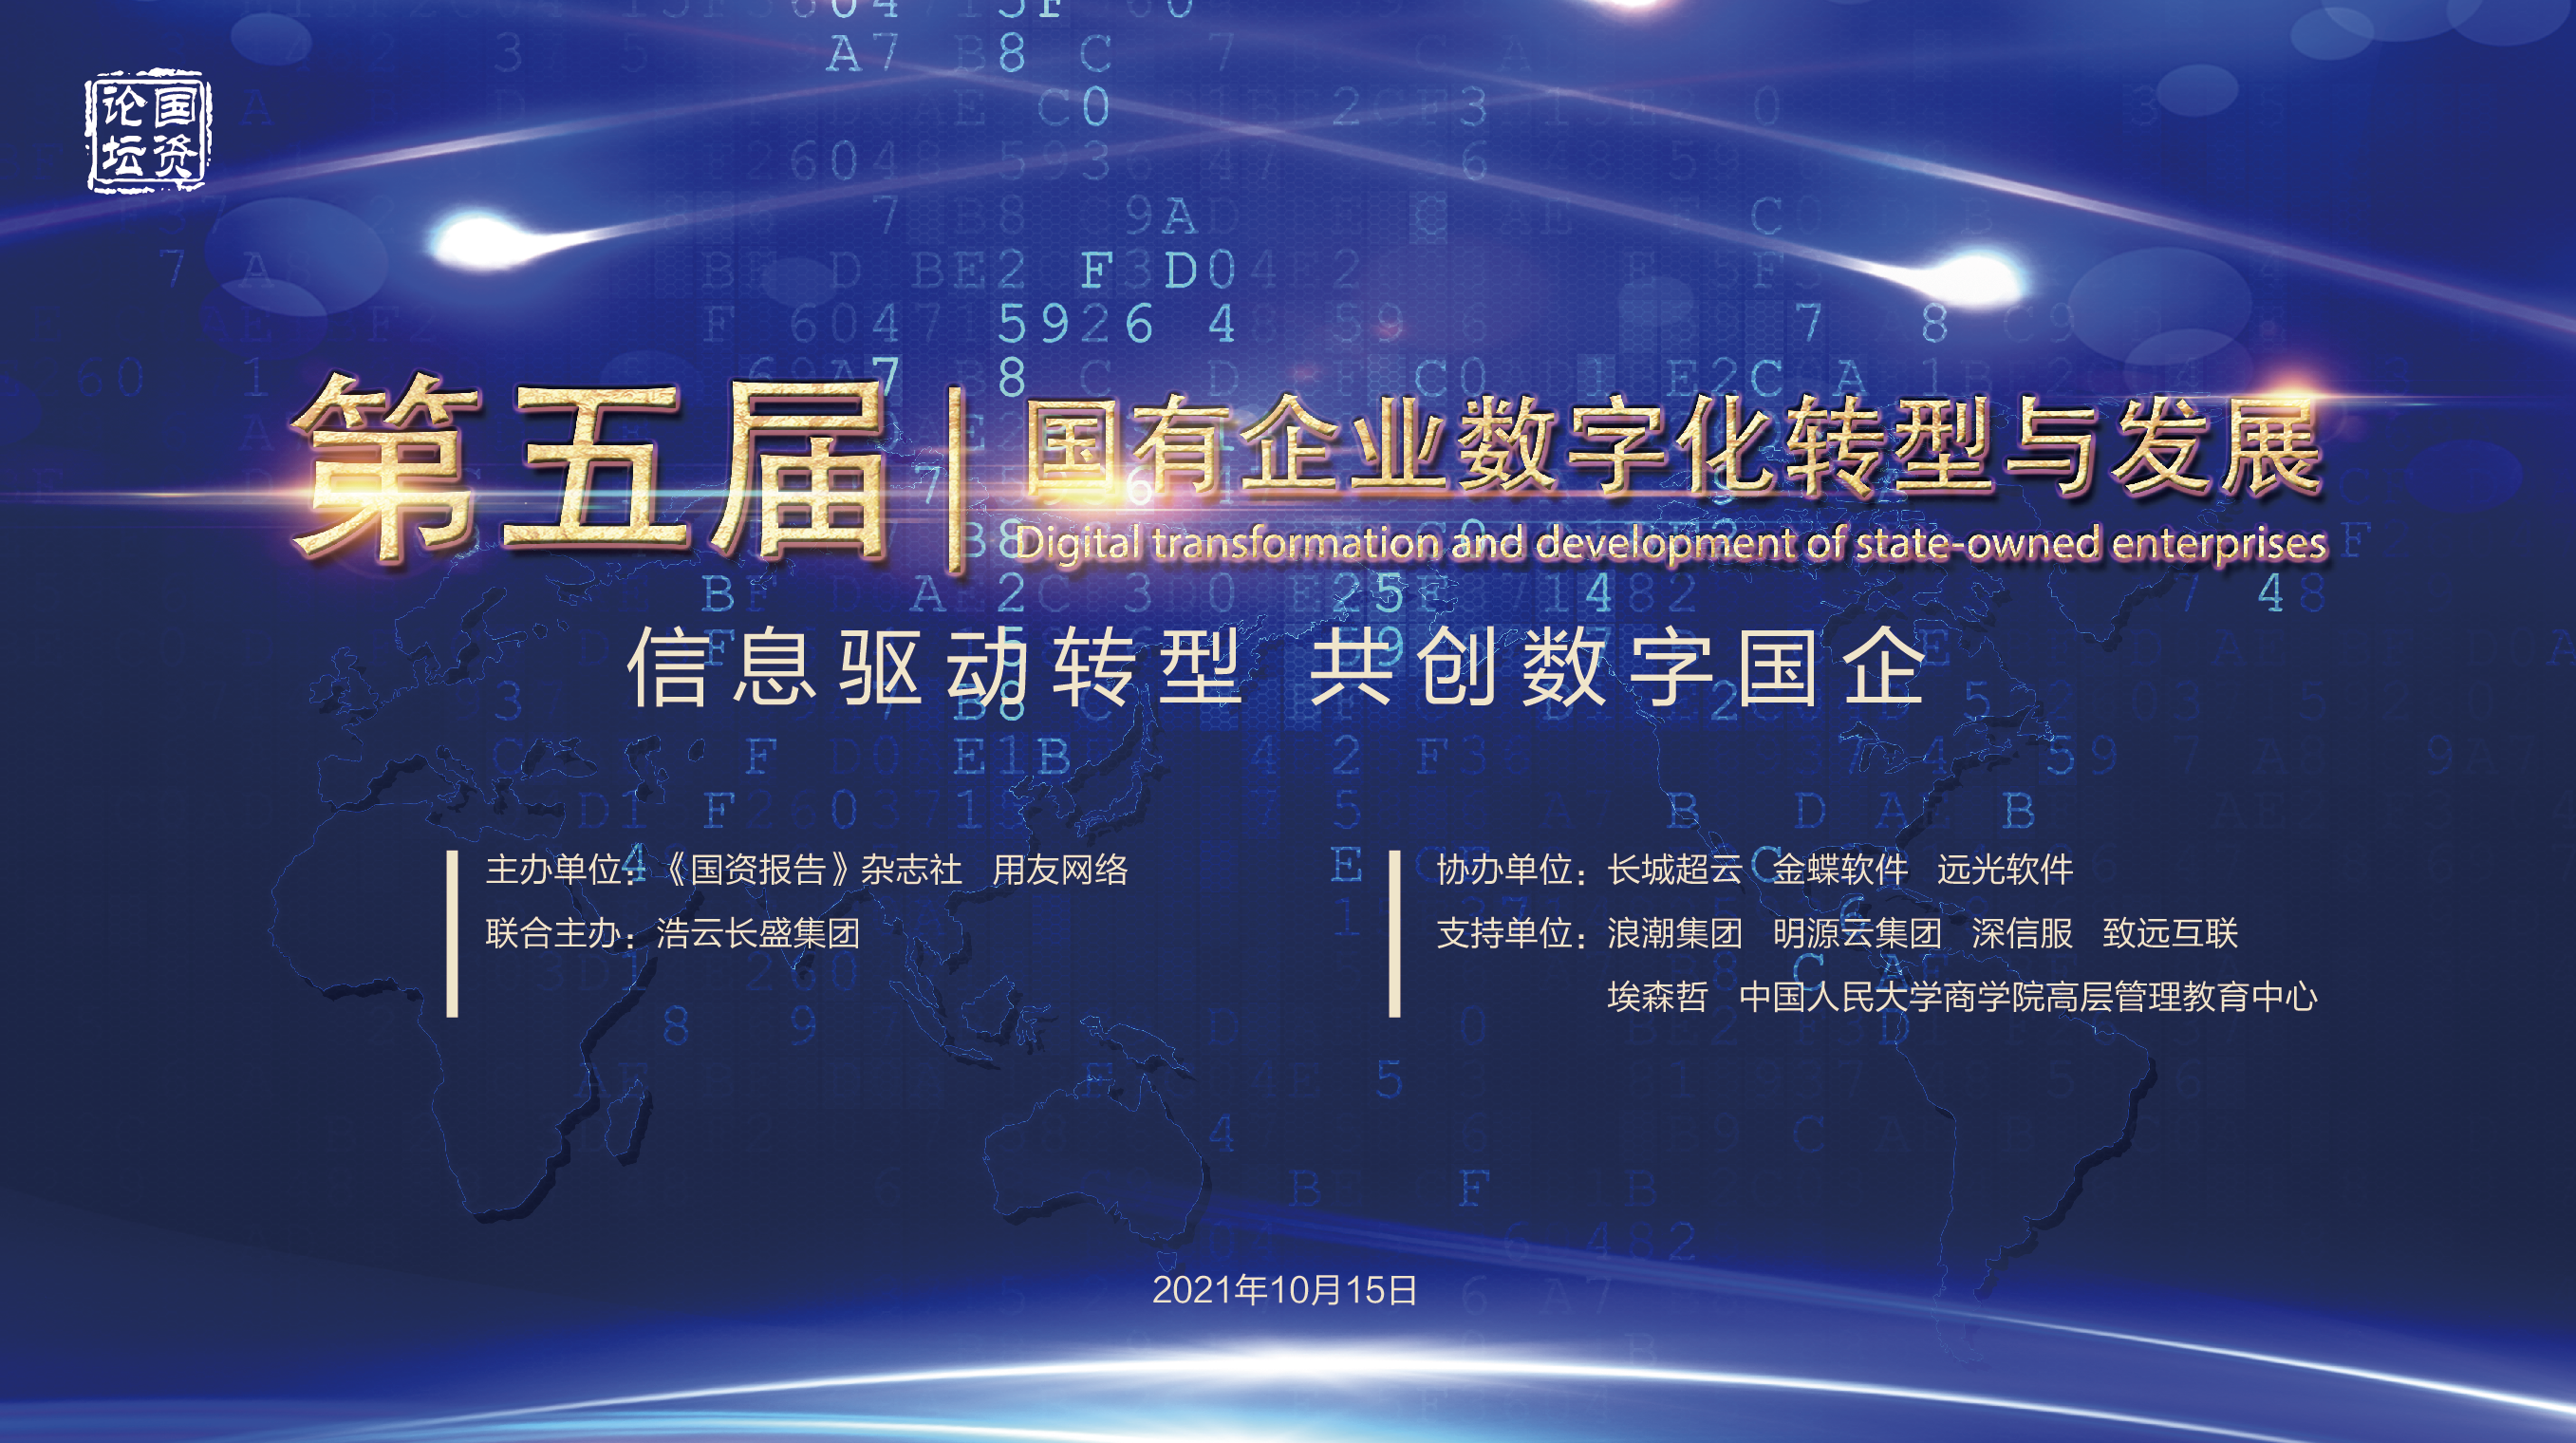 浩云长盛联合主办第五届国有企业数字化转型与发展研讨会